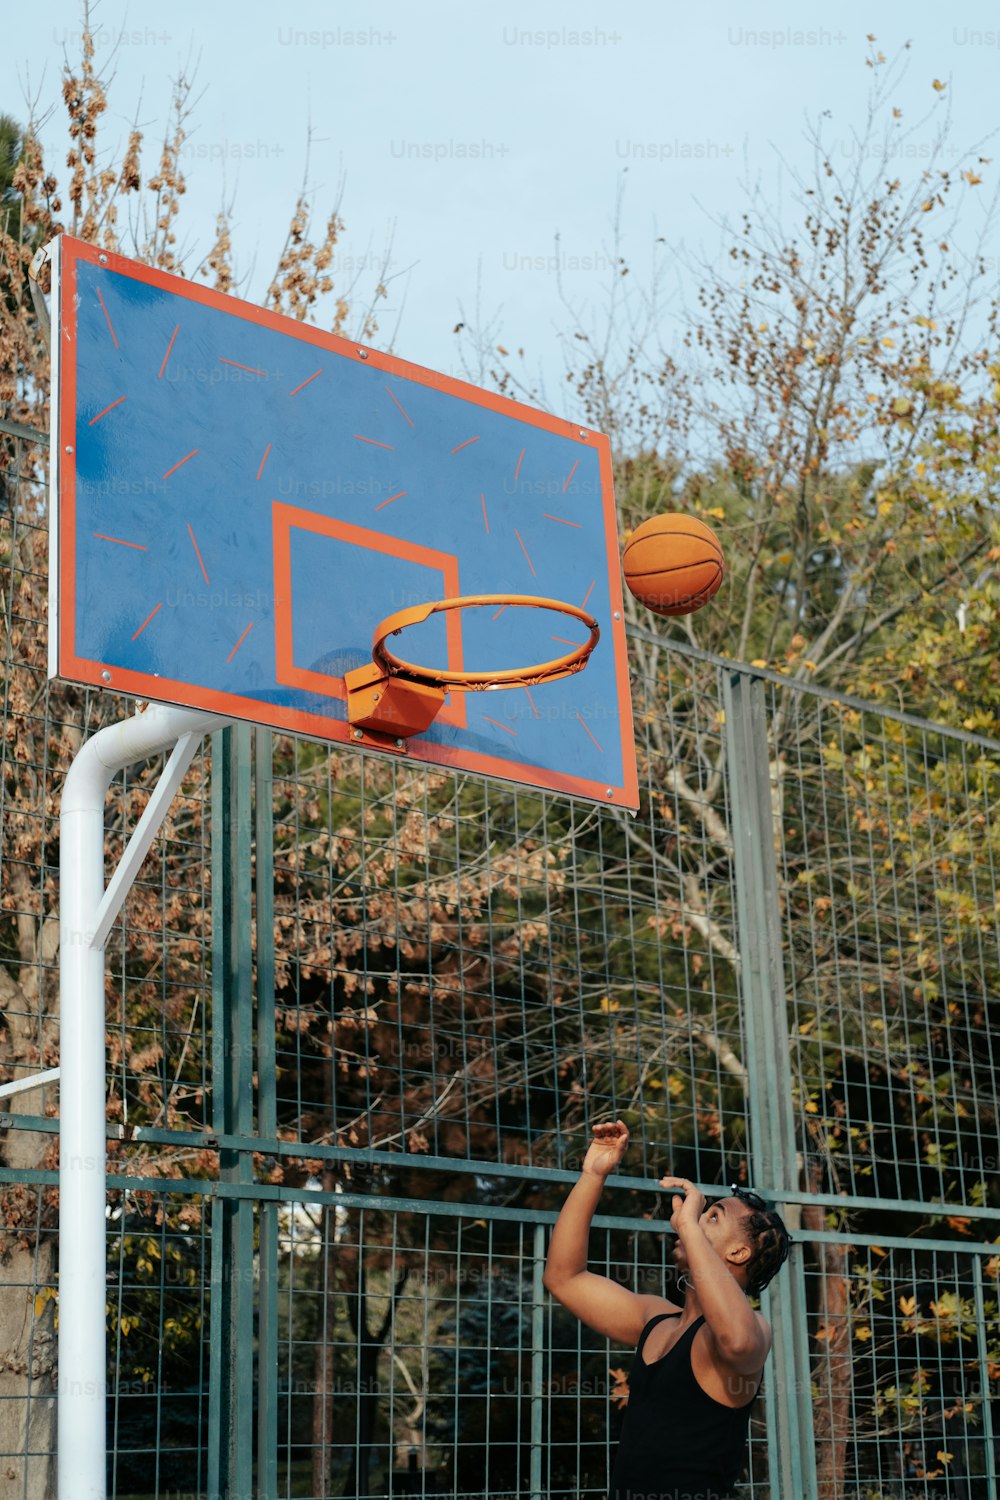 Un joven está jugando baloncesto en una cancha